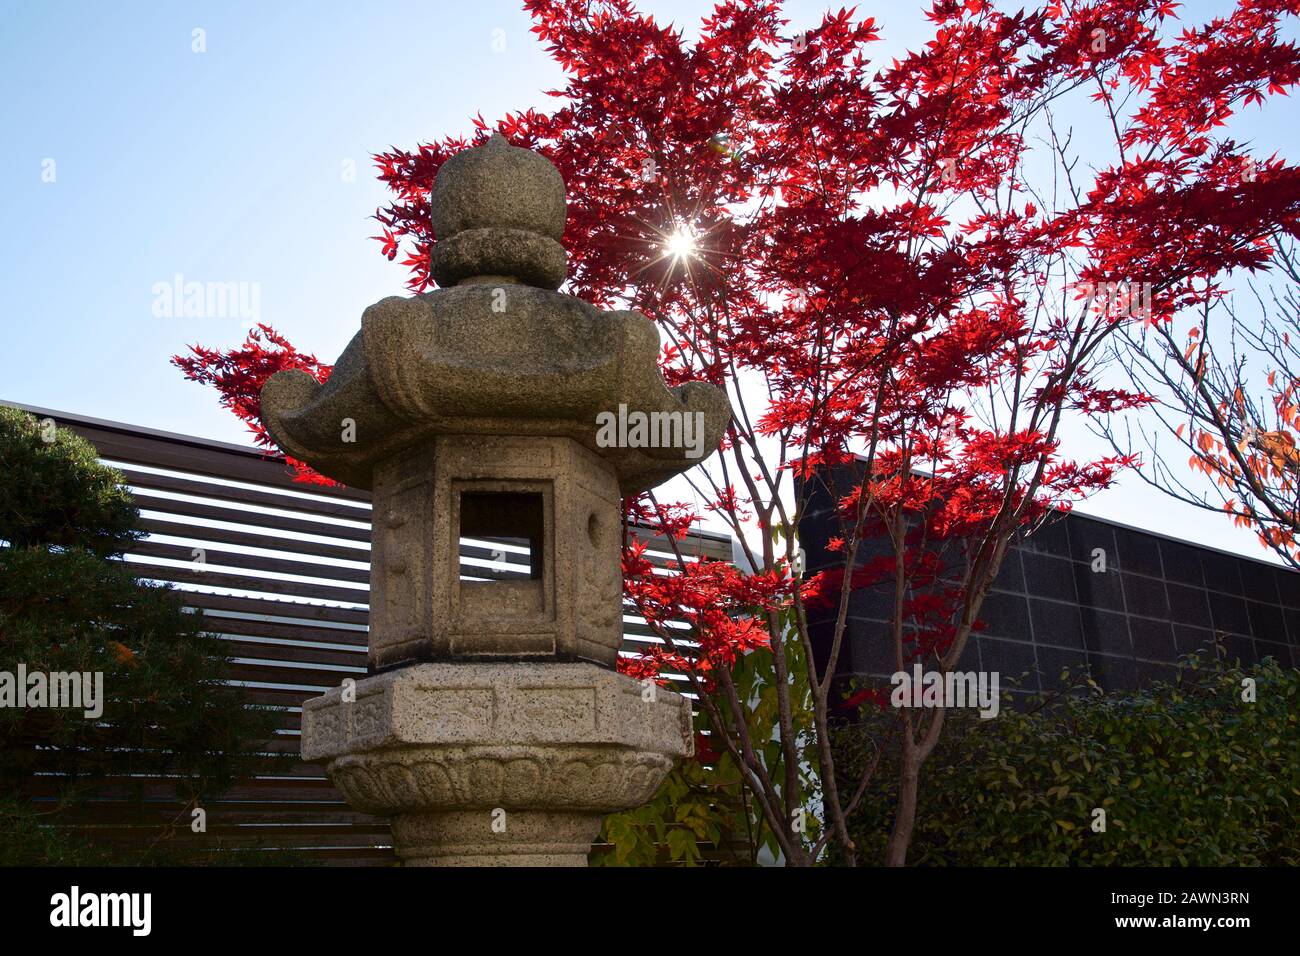 Japanischer Ahorn Baum im japanischen Garten Hinterhof Stockfoto